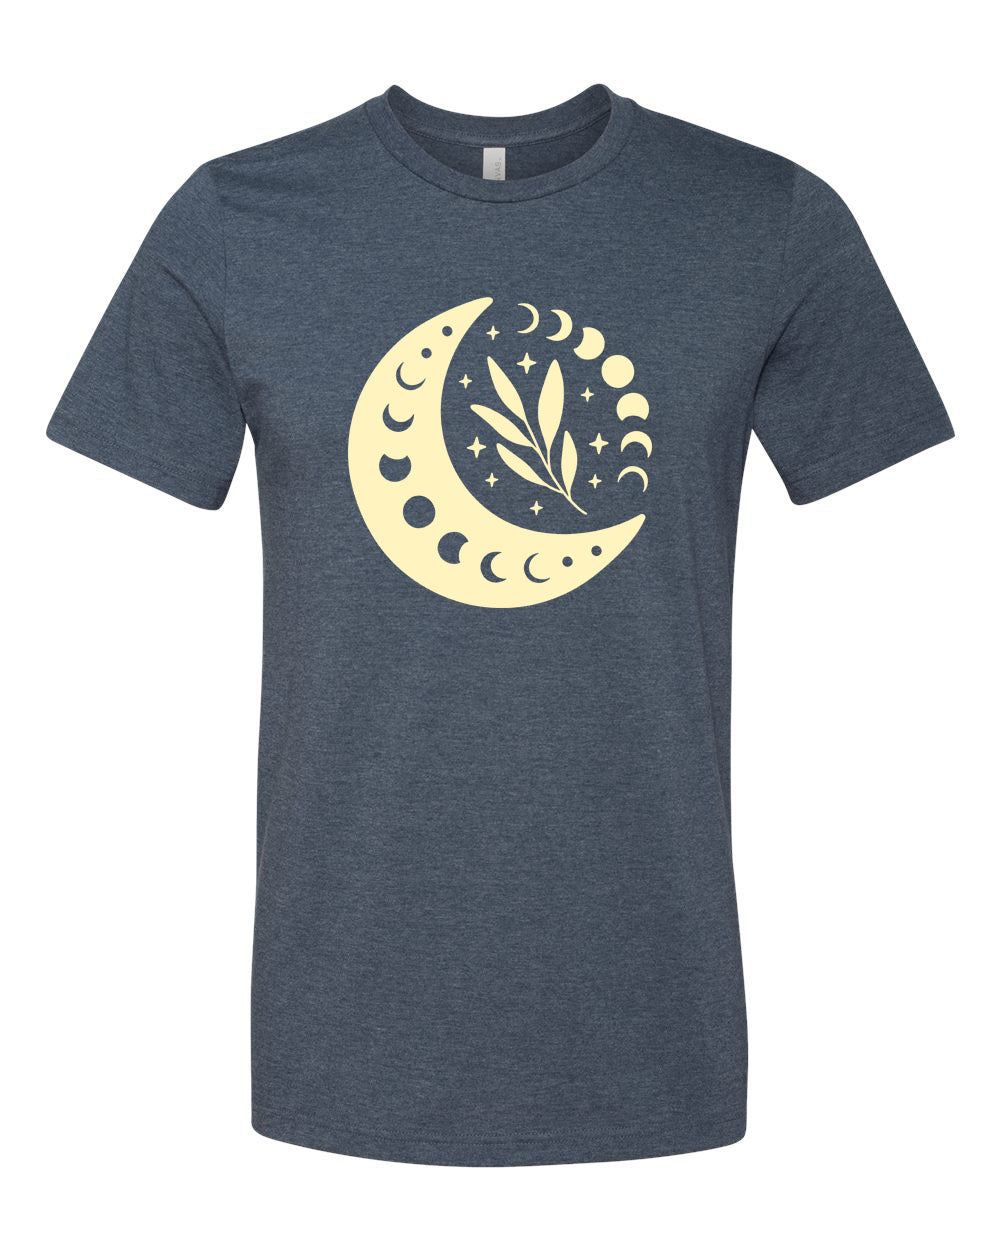 Moon Design 1 T-Shirt